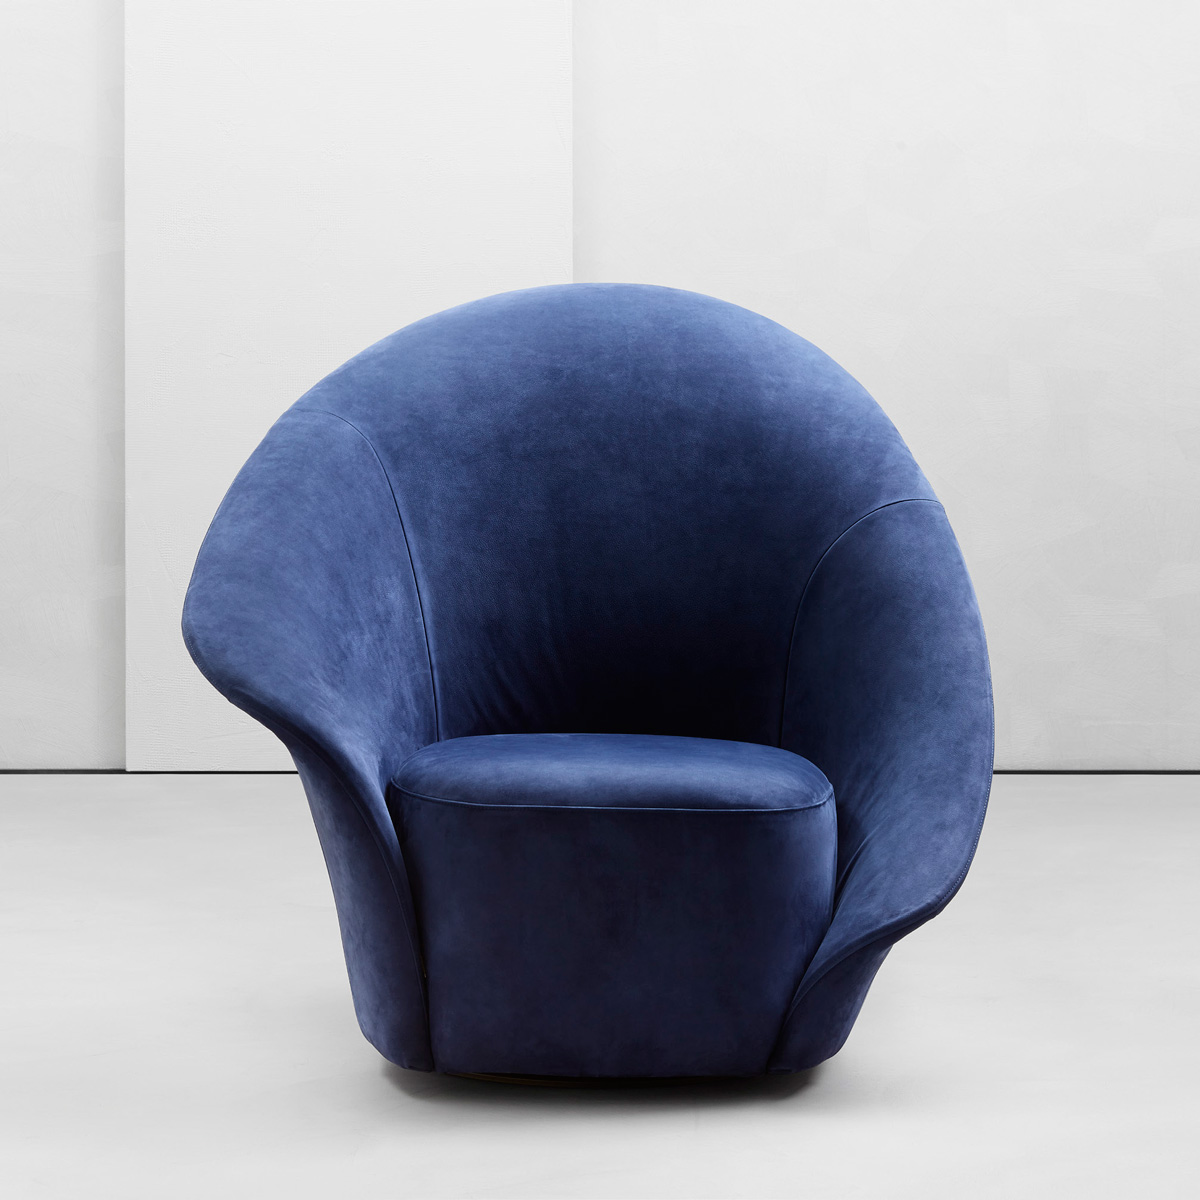 bentuk armchair elegan ini menyerupai bunga lili / flou / laflo 2